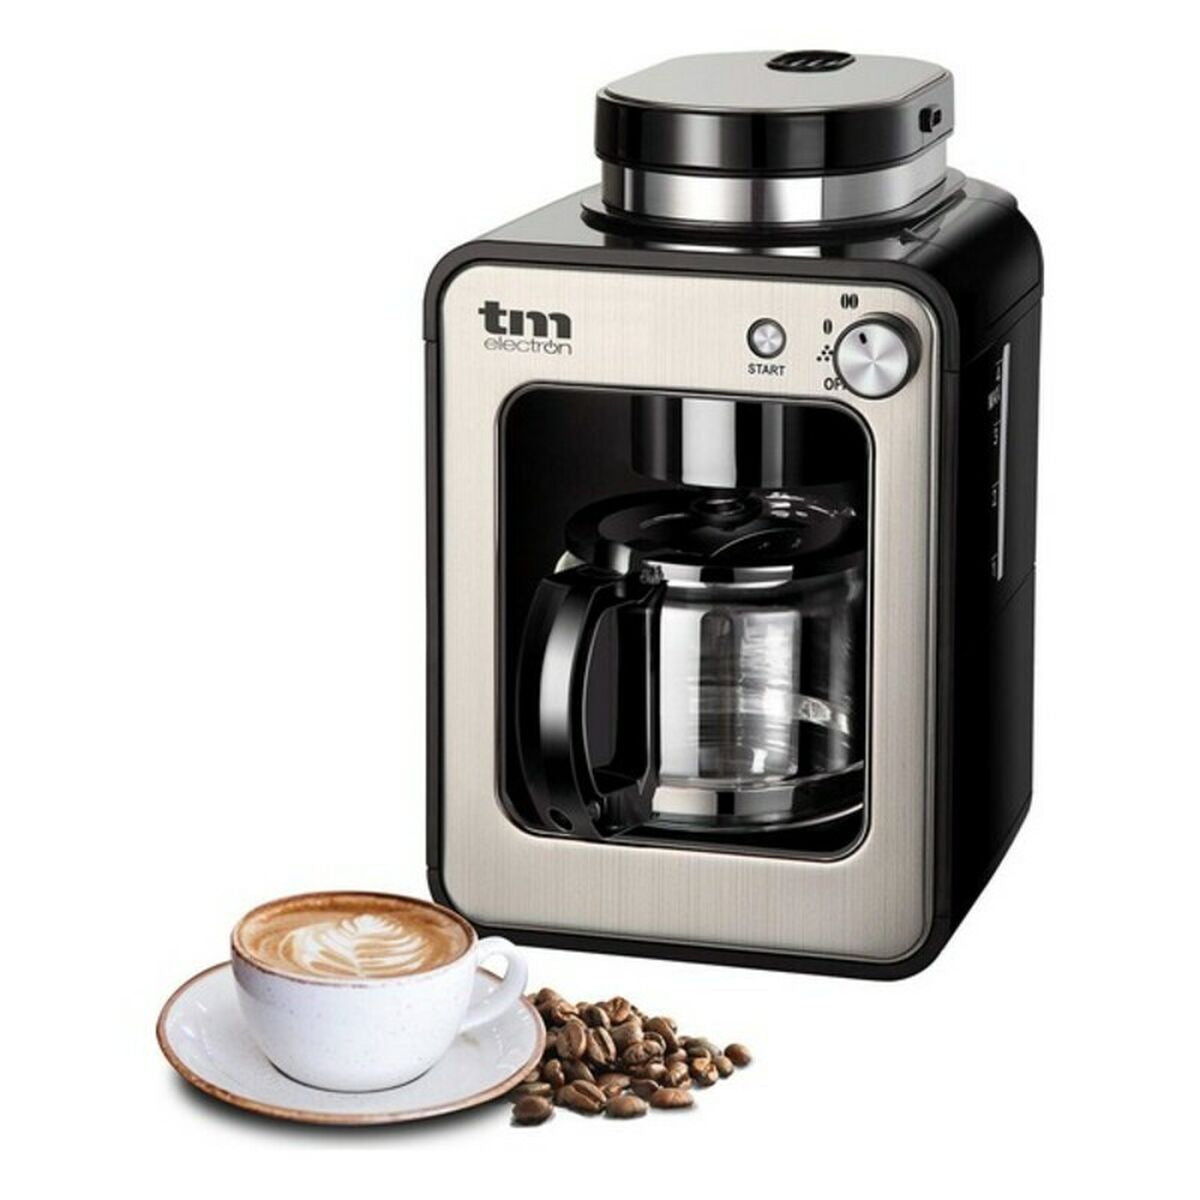 Dryp kaffemaskine TMPCF020S 600 W 4 kopper 600W